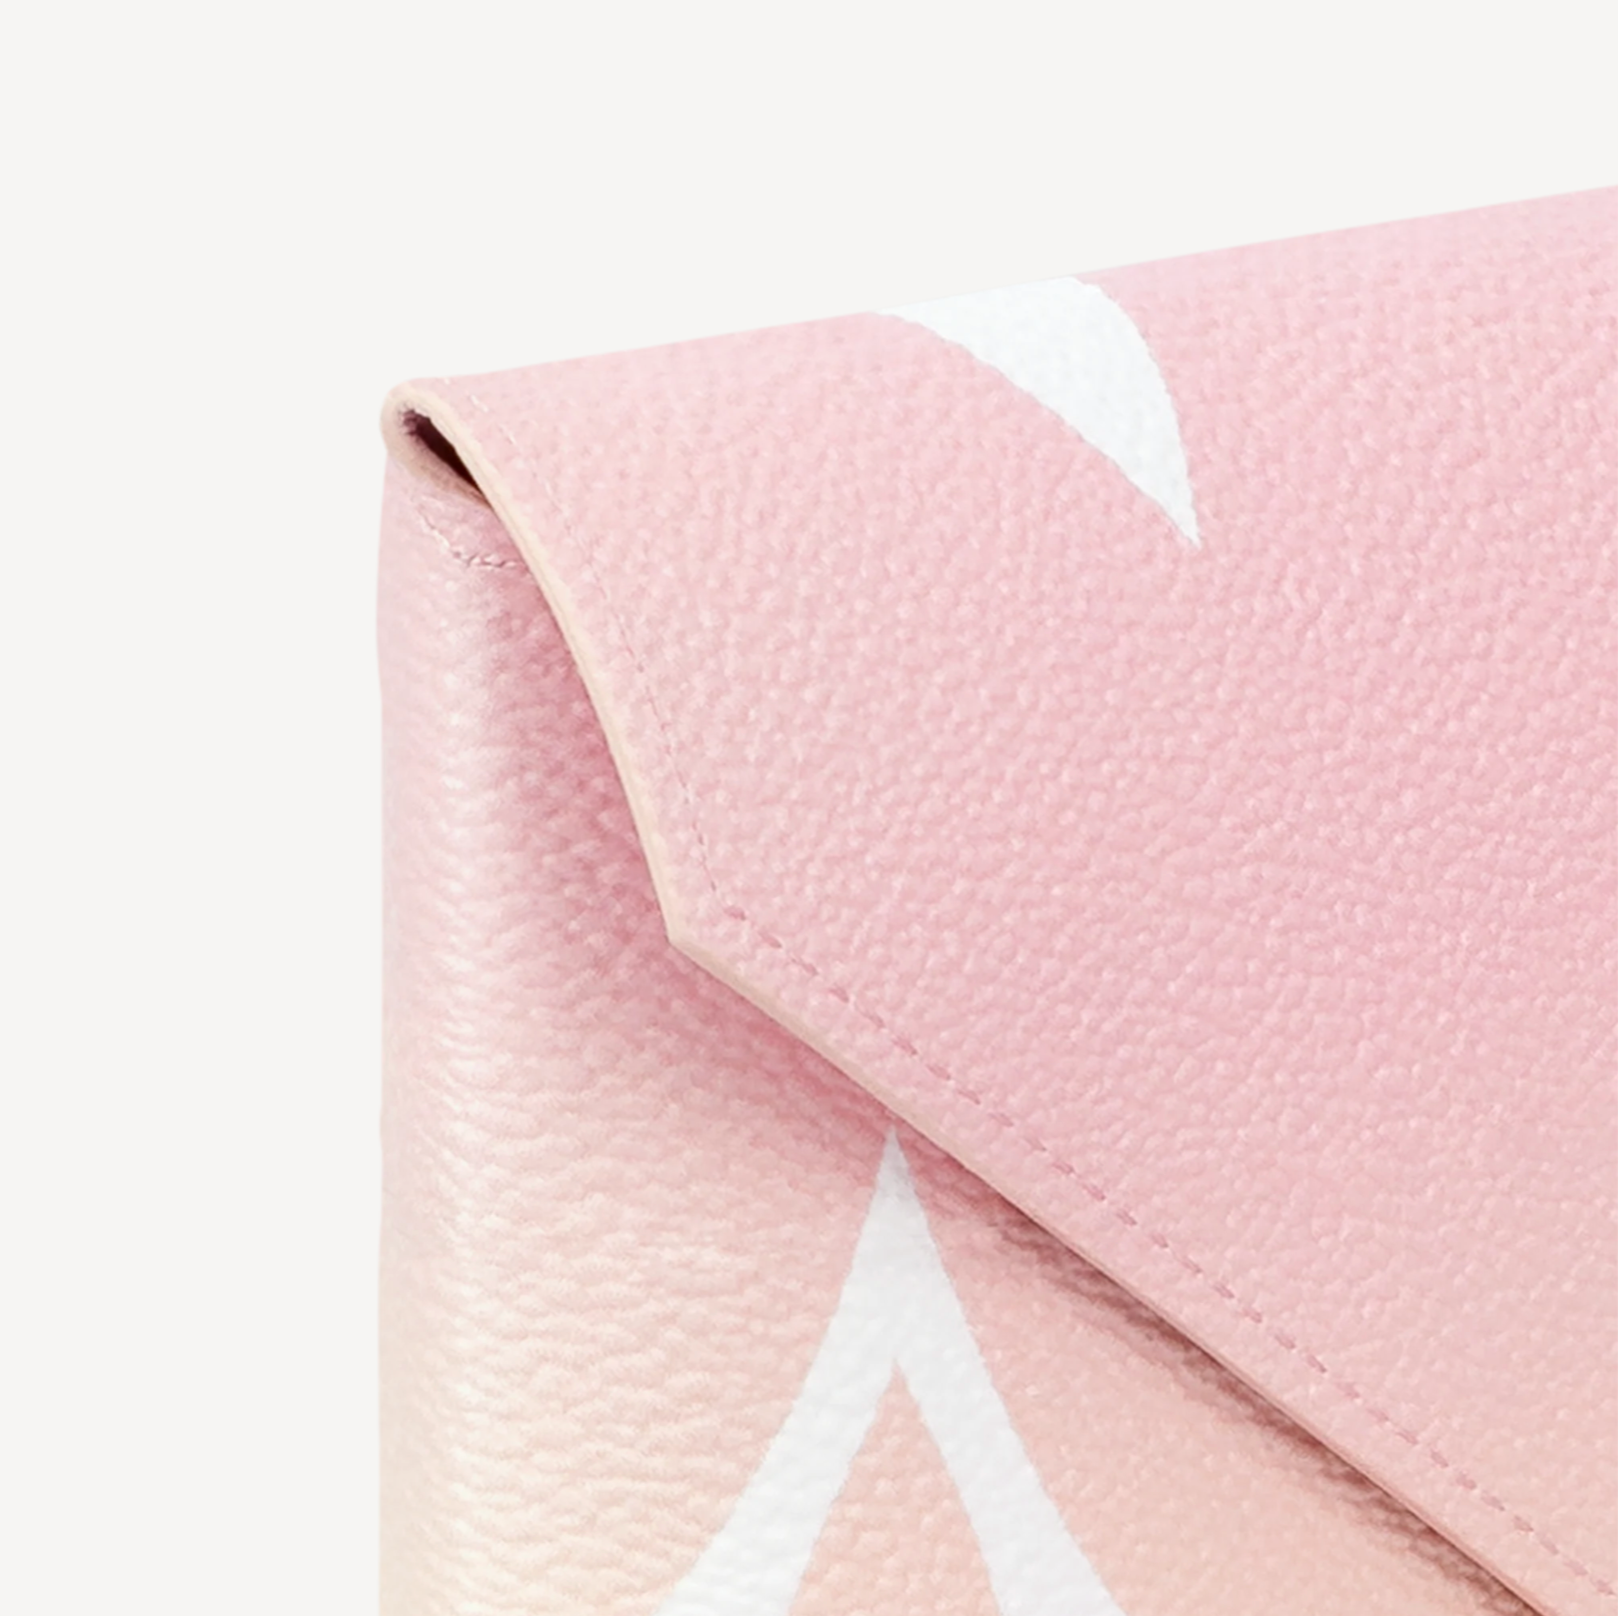 Louis Vuitton Kirigami Pochette Blue/Pink/Beige